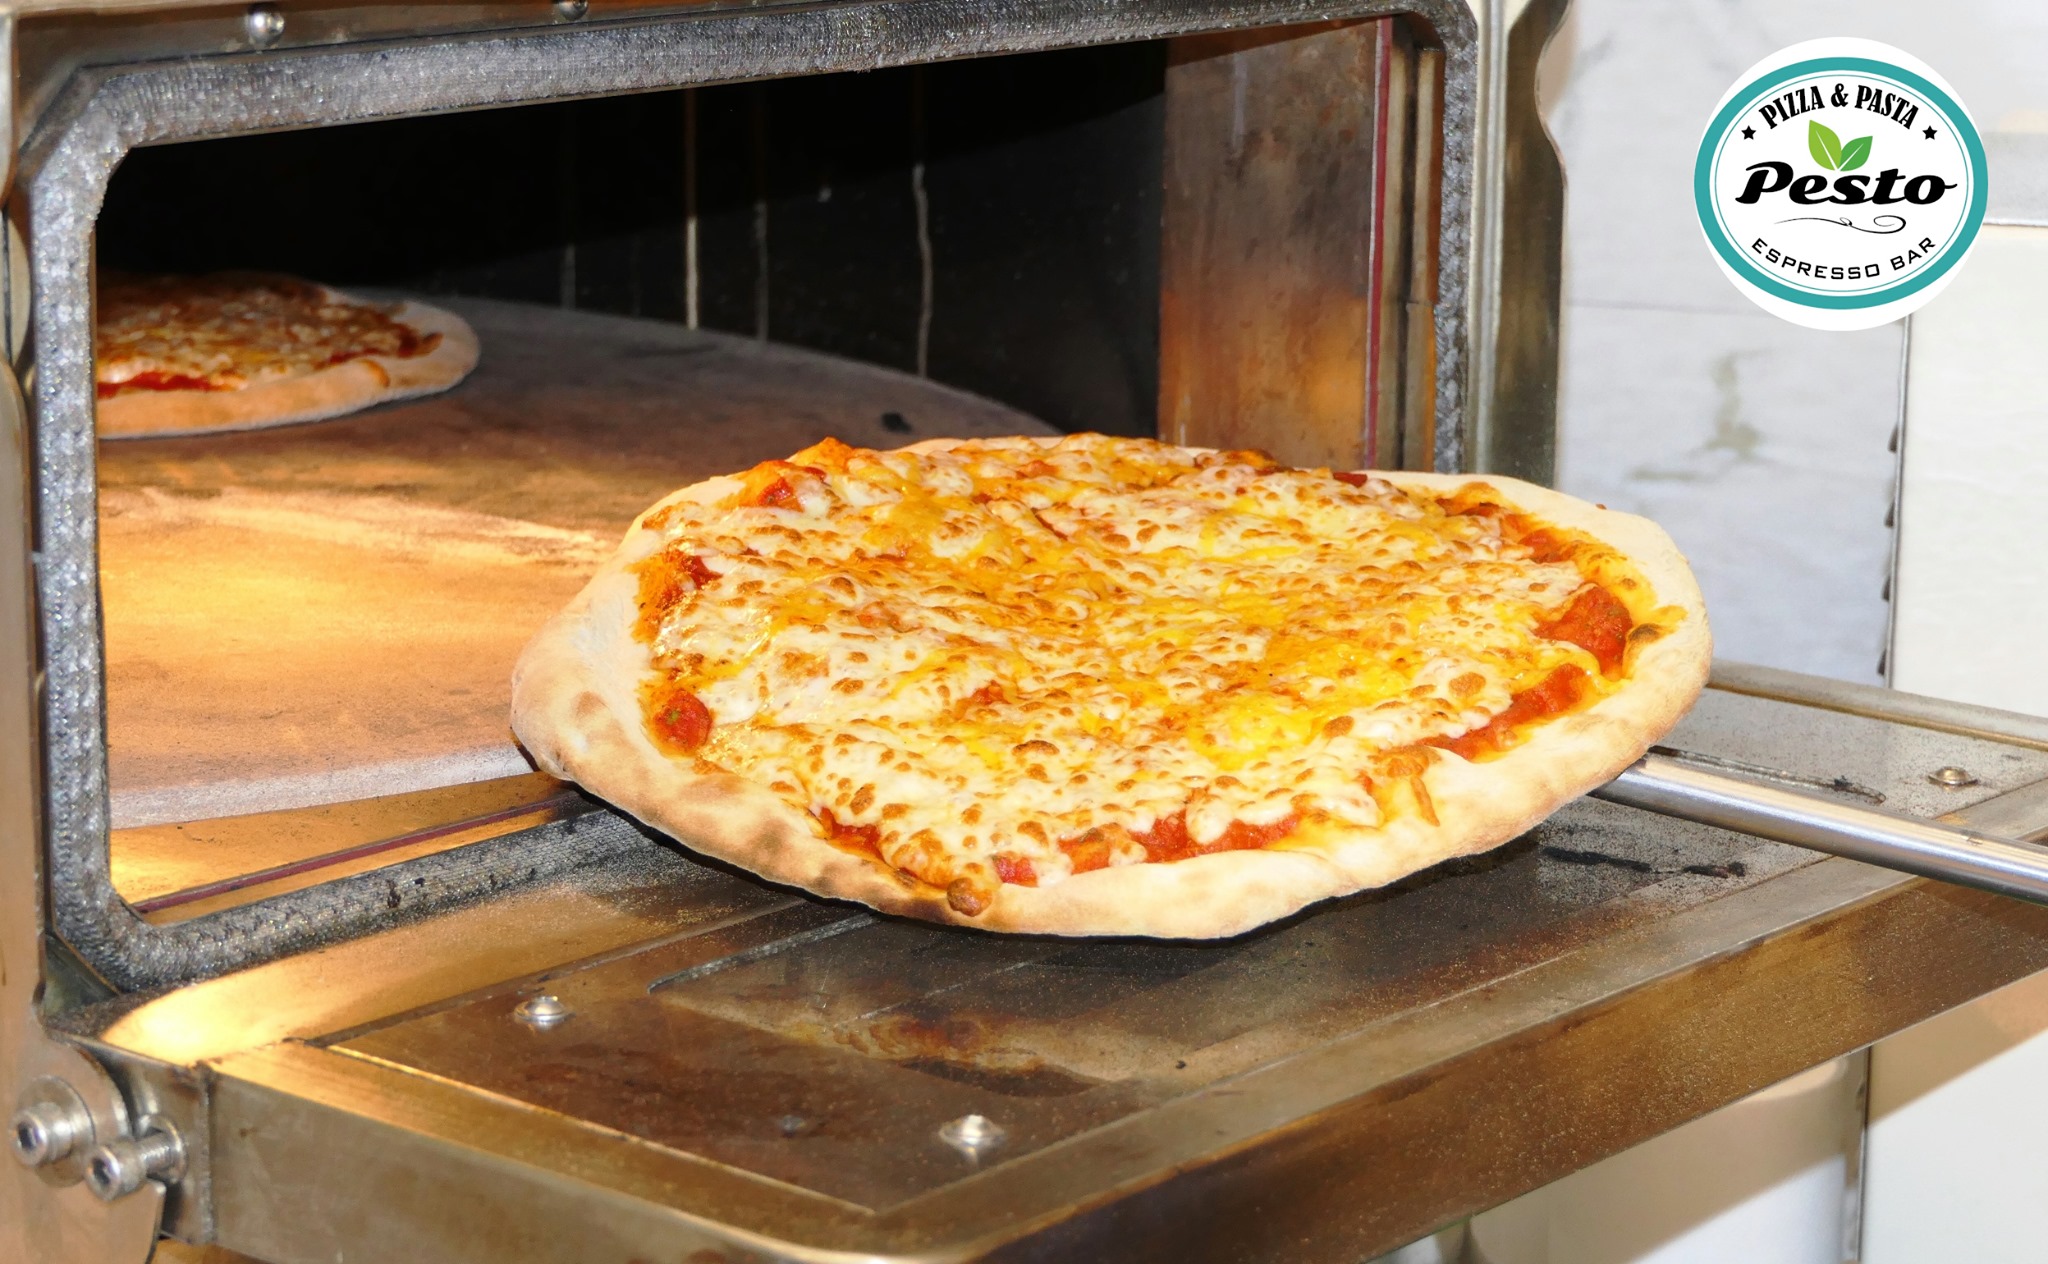 Pesto στην Ιπποκράτους: Πίτσα και πάστα για κάθε γούστο ως το πρωί